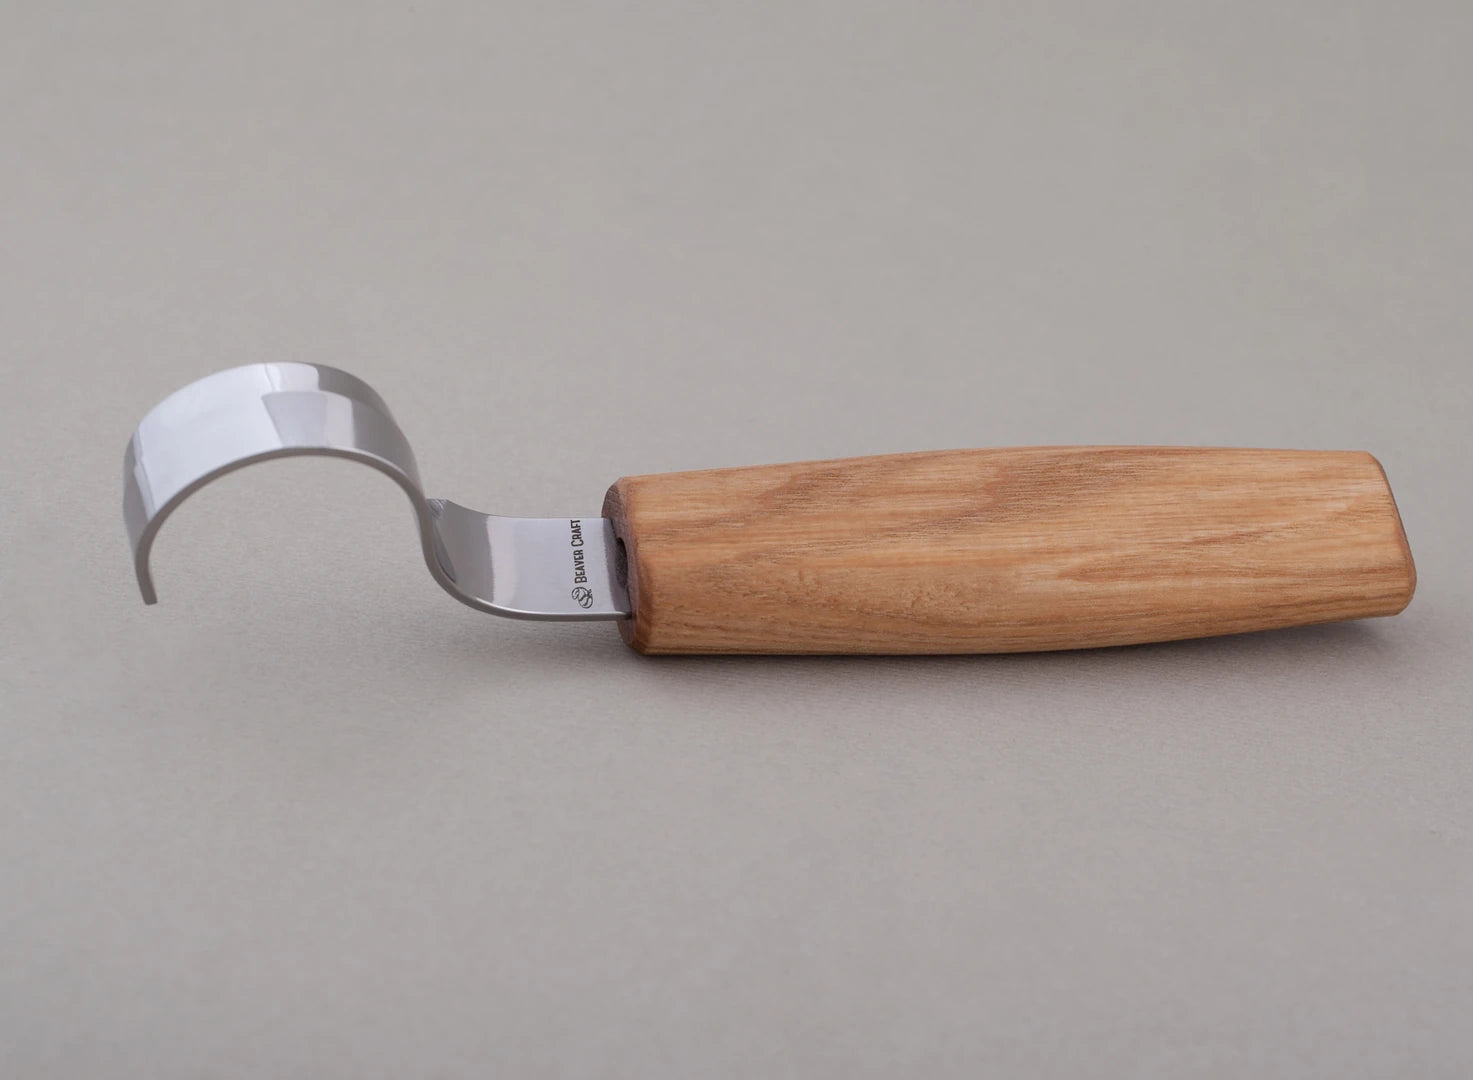 Sk2 Imitation Mahogany Carving Knife Set, Neutral Wood Carving